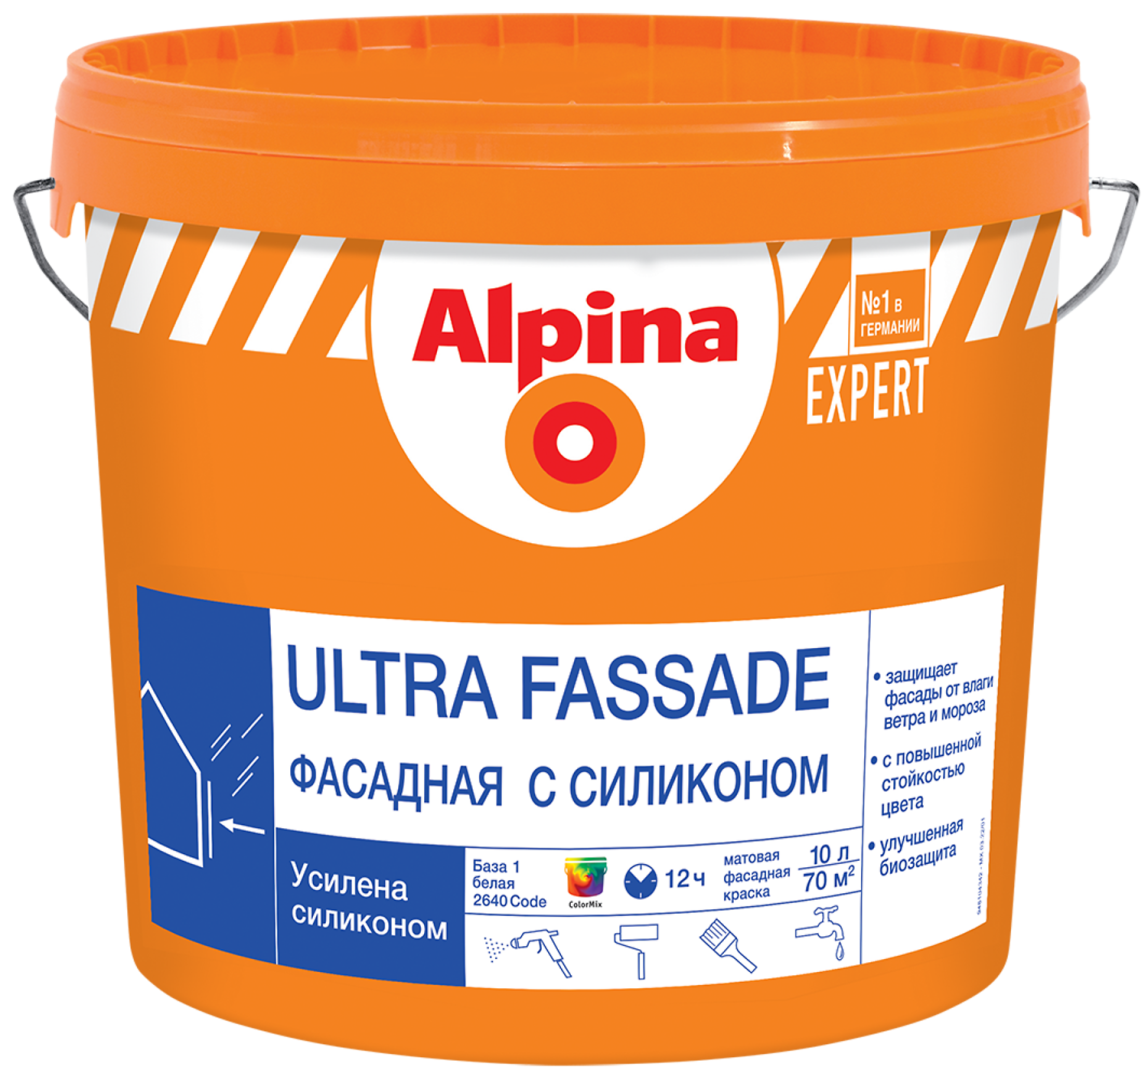 ALPINA EXPERT ULTRA FASSADE краска для наружных работ, фасадная с силиконом, База 3 (2,35л)